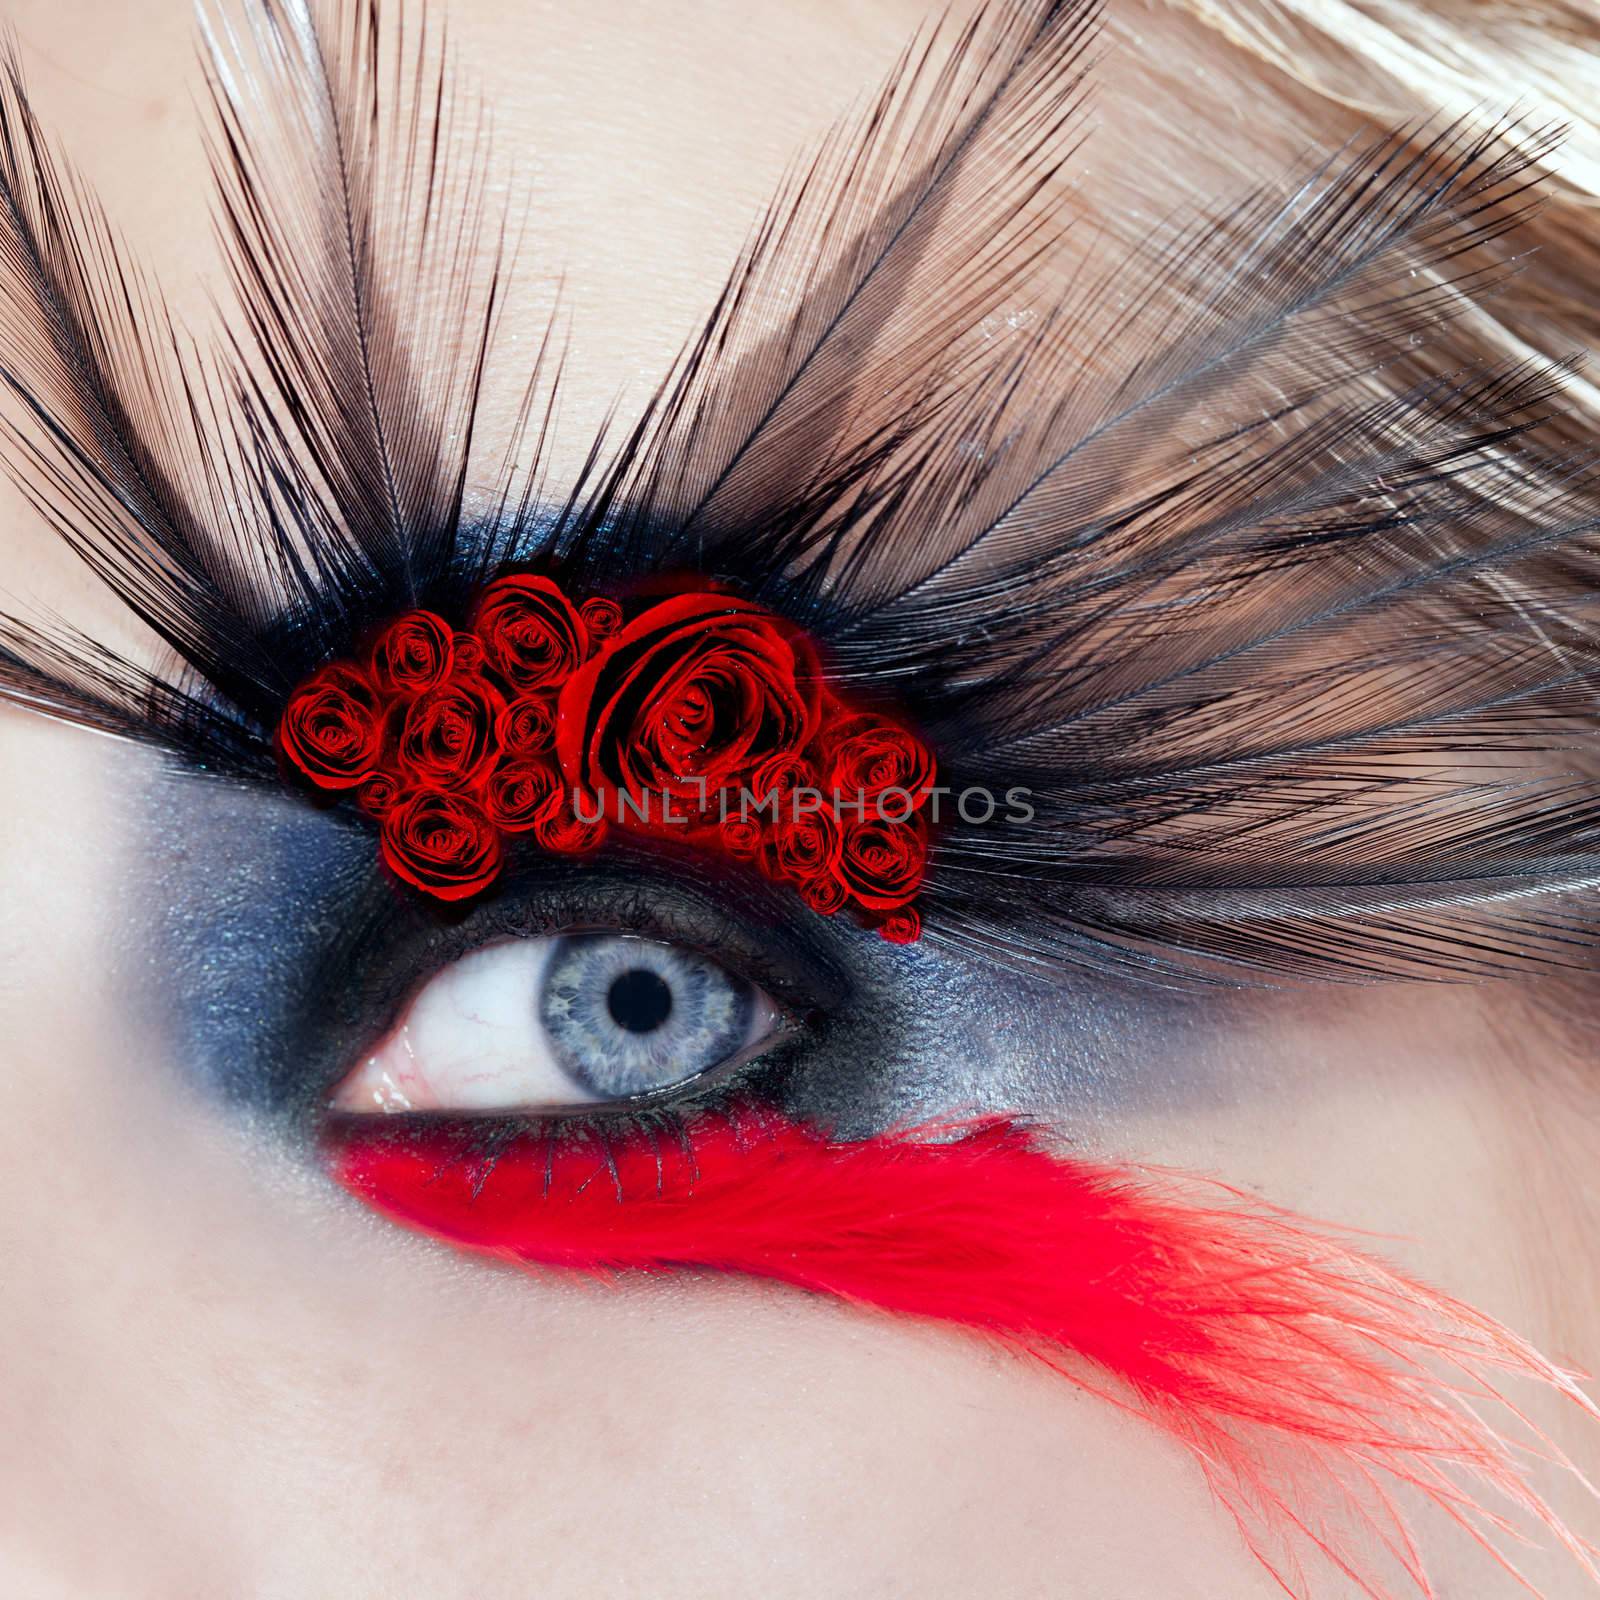 black bird woman eye makeup macro red rose spanish metaphor mothers day